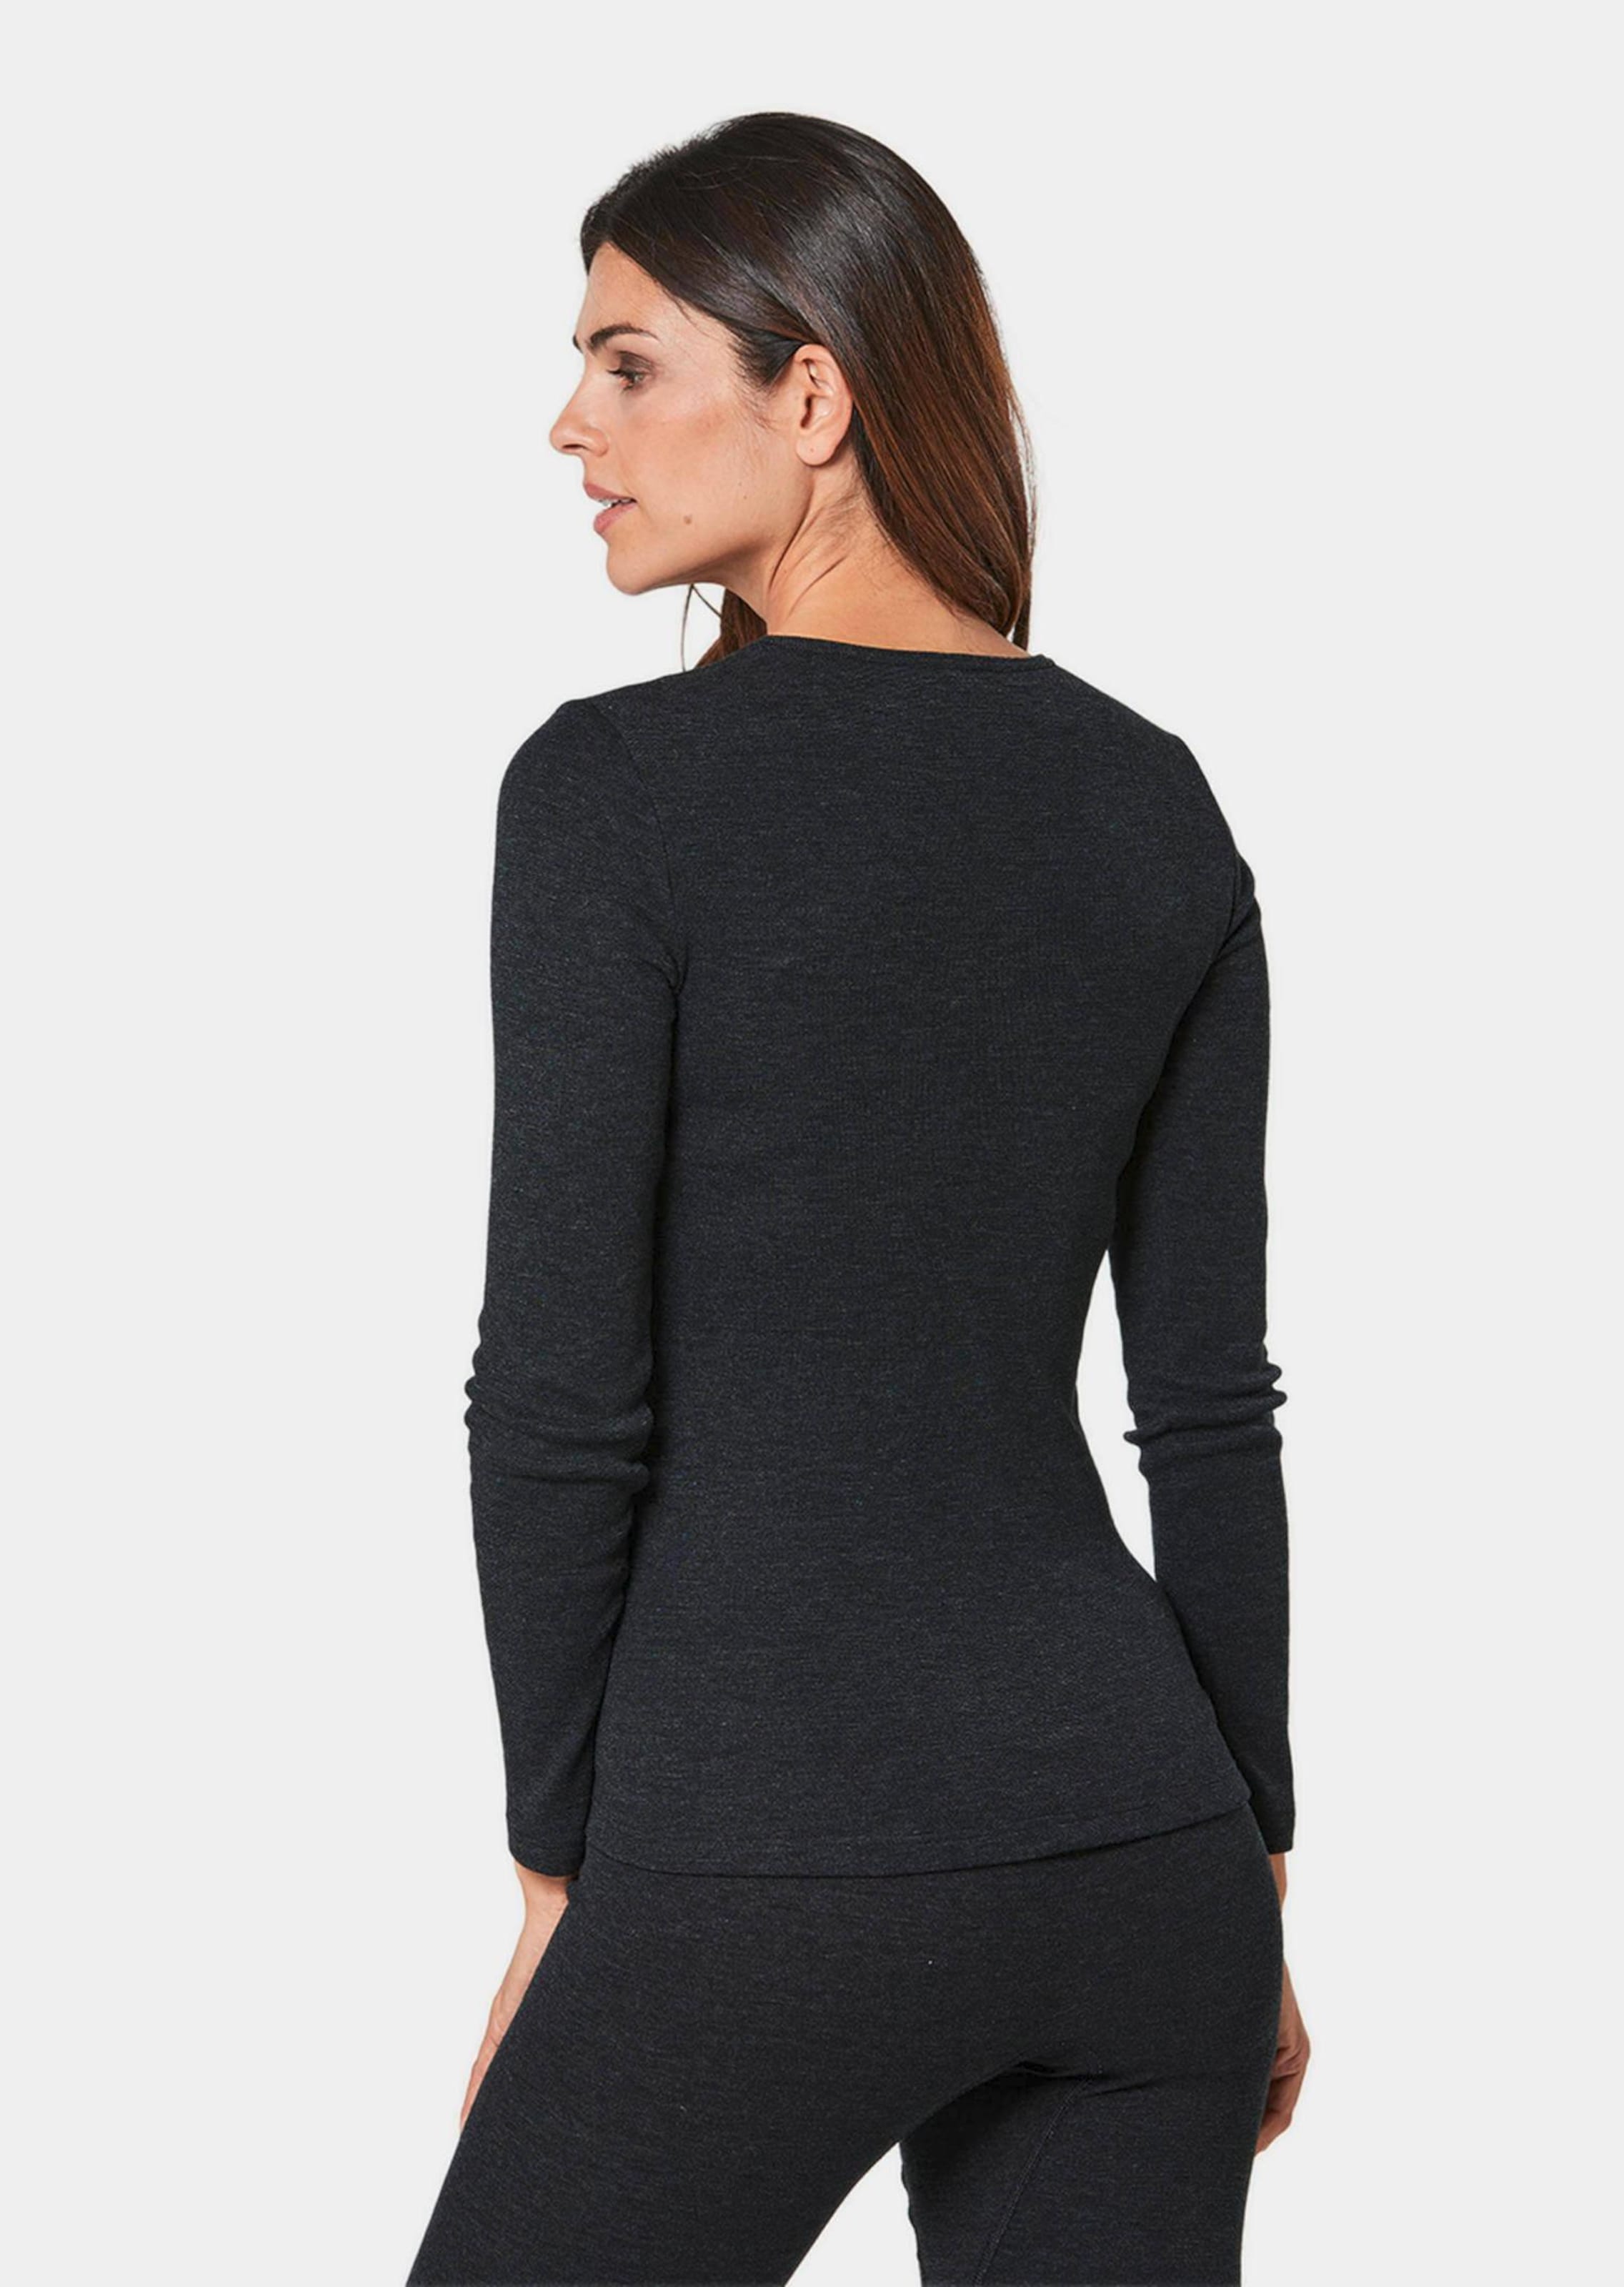 Sous-vêtement à manches longues thermo pour femmes - noir / mélangé - Gr. 52 de Goldner Fashion